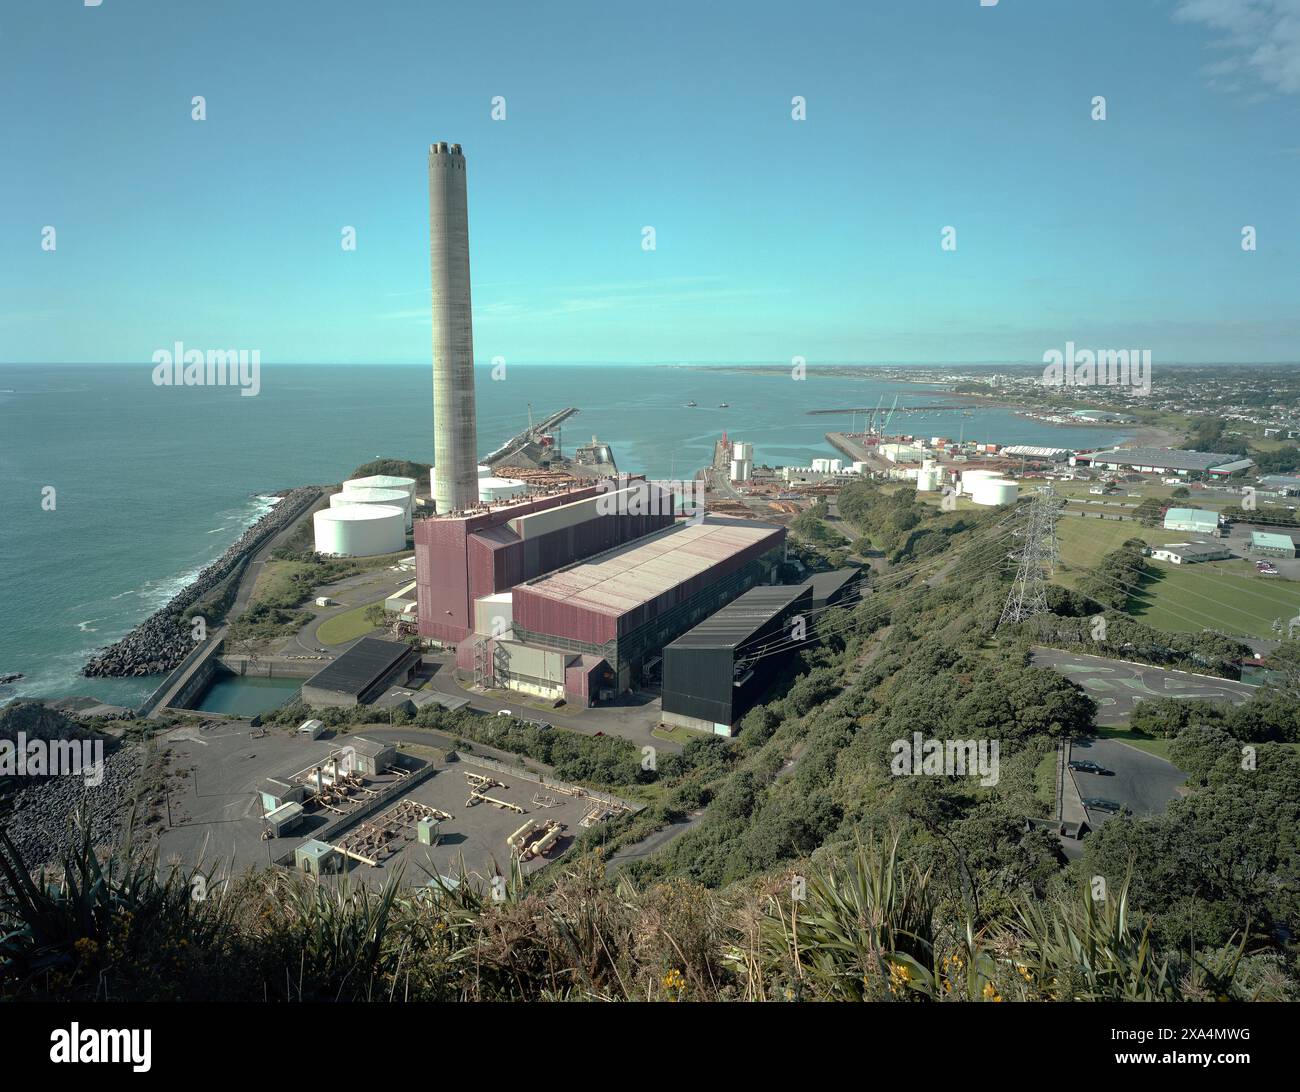 Un complexe industriel avec de grands réservoirs de stockage et une cheminée haute est positionné le long d'un littoral, New Plymouth, Nouvelle-Zélande Banque D'Images